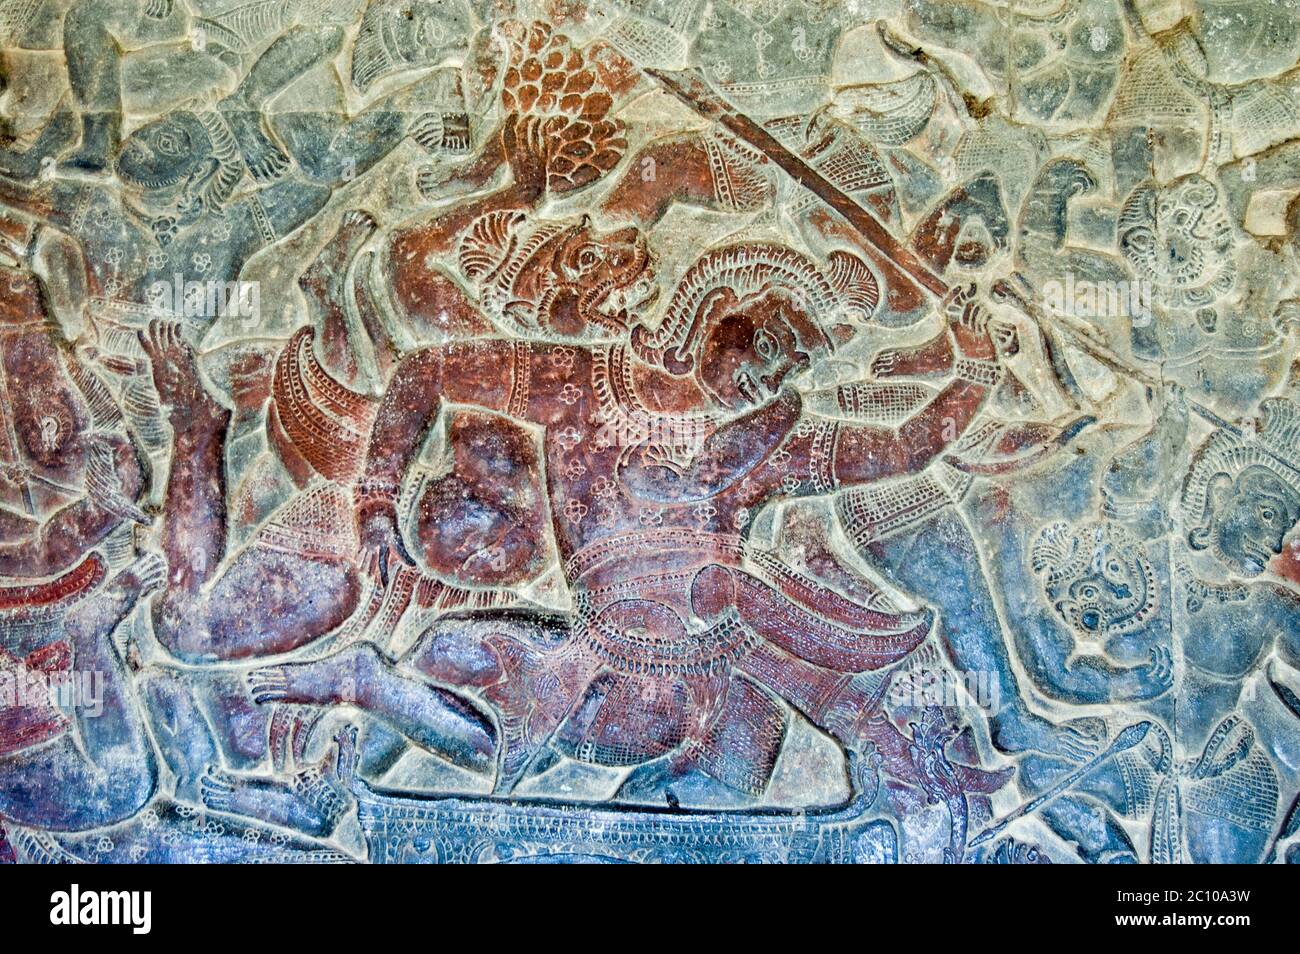 Bassorilievo che mostra una scena della battaglia di Lanka tra Rama e Ravana come descritto nell'epico Ramayana. Un soldato di scimmia sta combattendo contro un demone. W Foto Stock